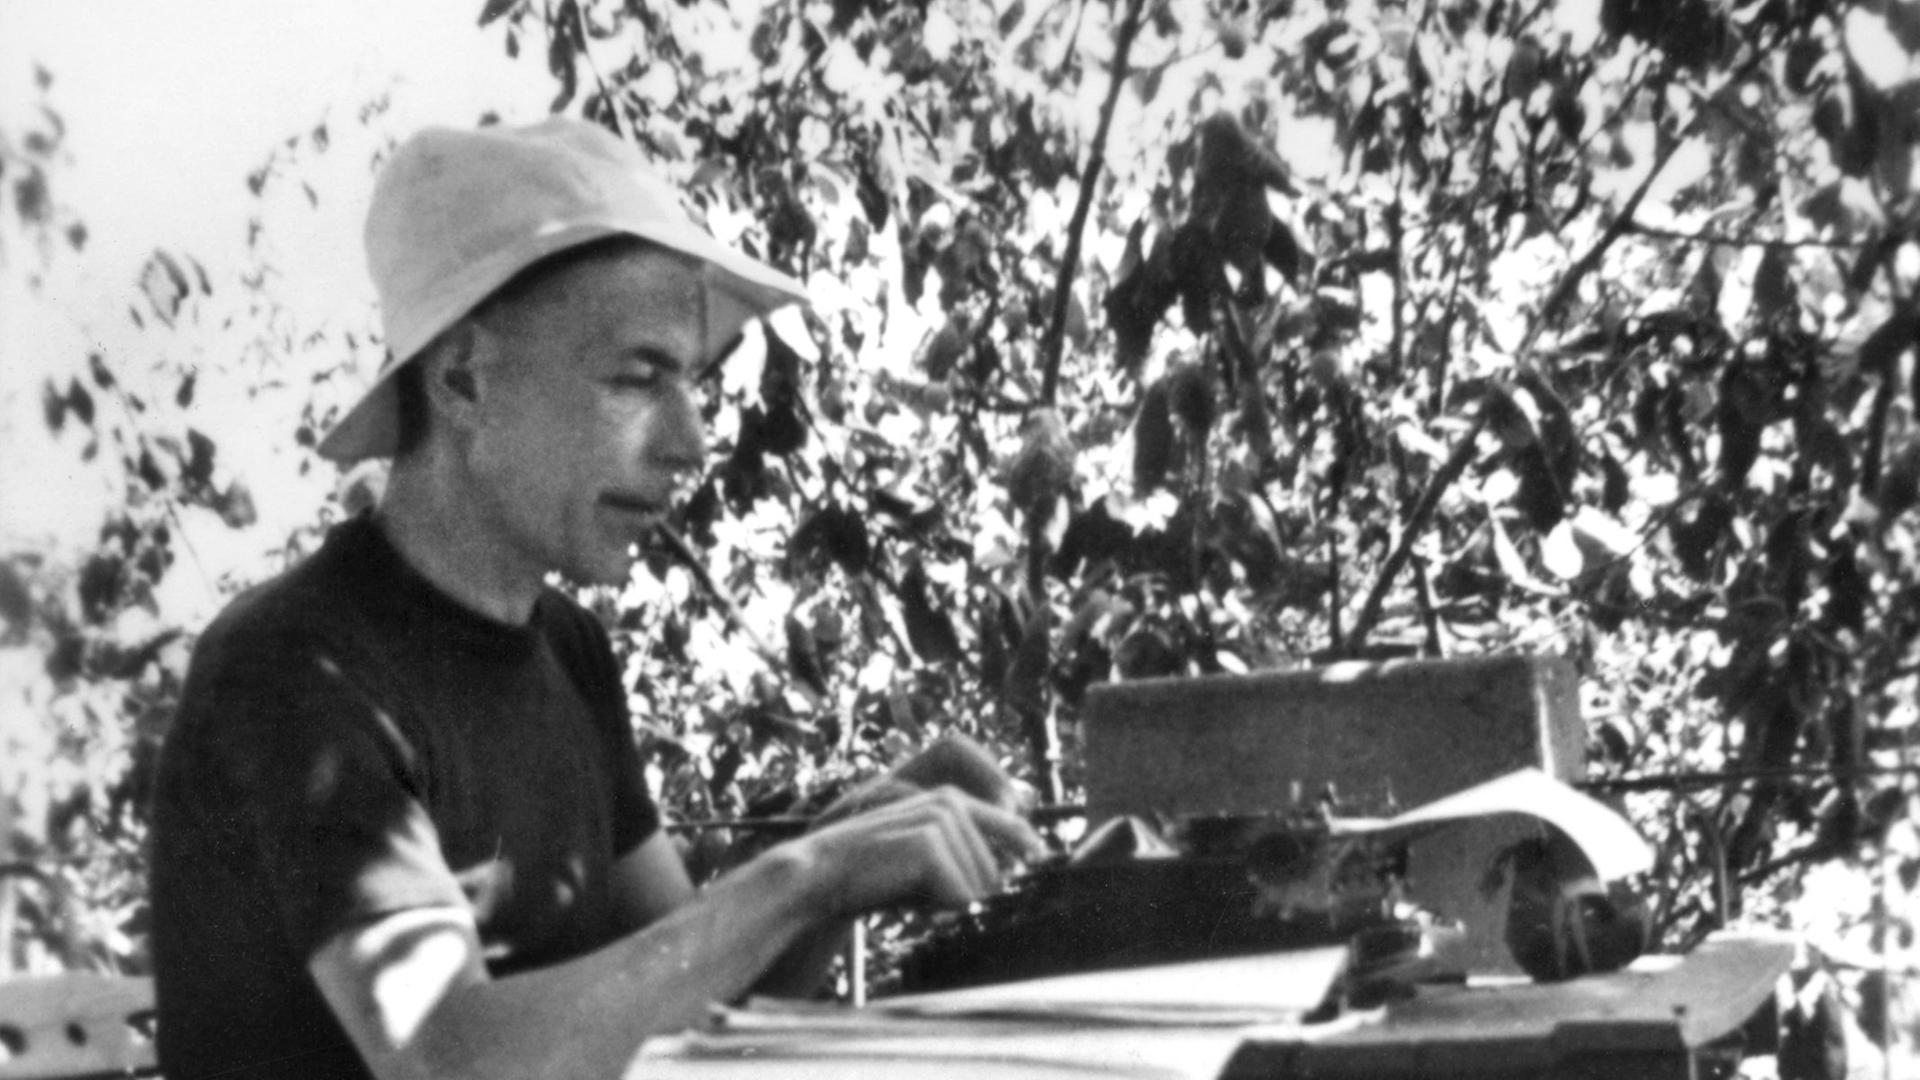 Der Schweizer Schriftsteller Friedrich Glauser im Sommer 1938 in Nervi, wie er an einem Tisch mit Schreibmaschine sitzt.